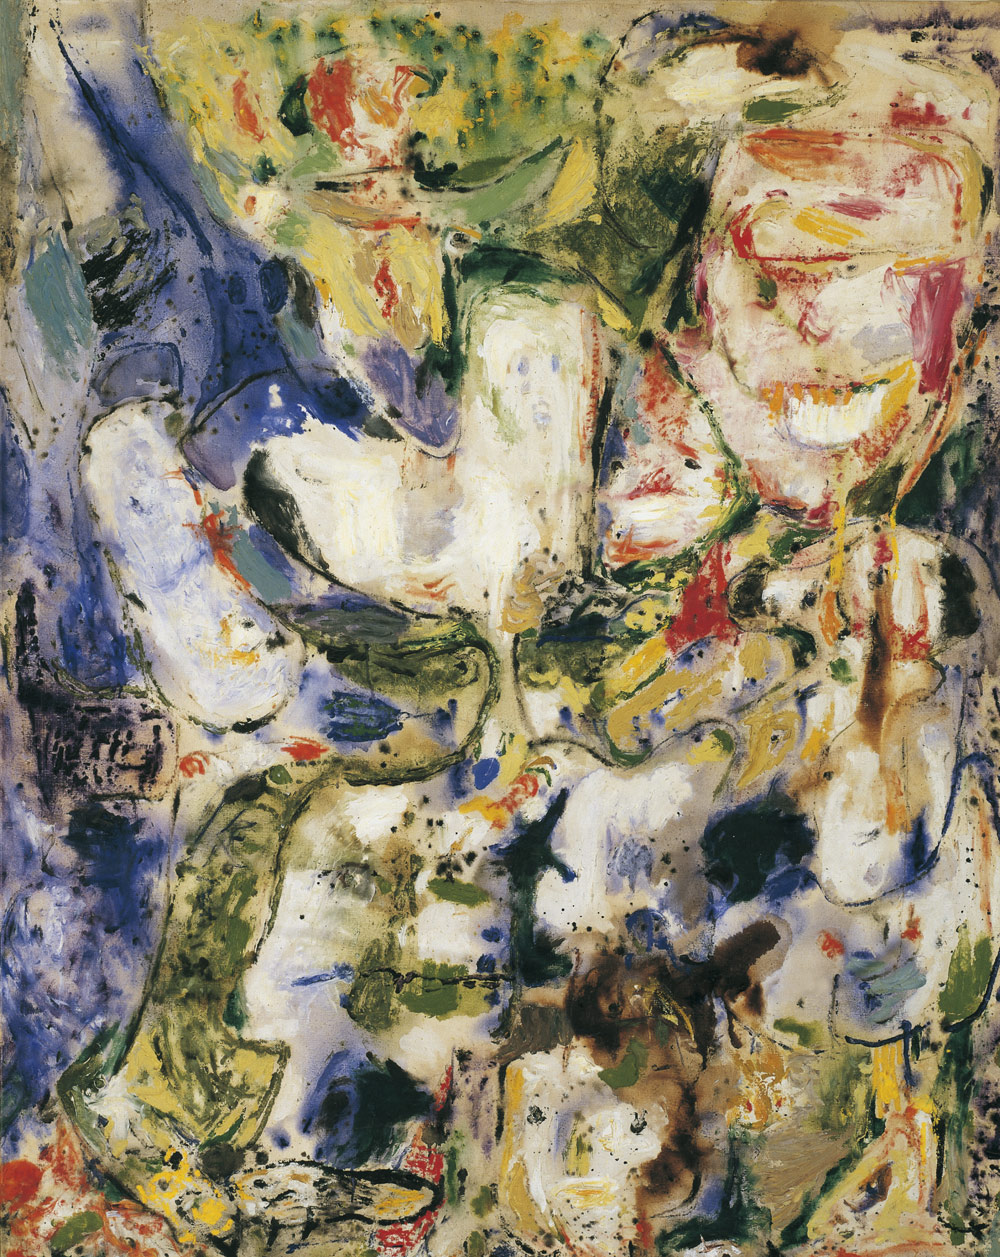 Asger Jorn, Senza titolo (1956–57; olio su tela, 141 x 110,1 cm; Venezia, Collezione Peggy Guggenheim) © Donation Jorn, Silkeborg, by SIAE 2019
